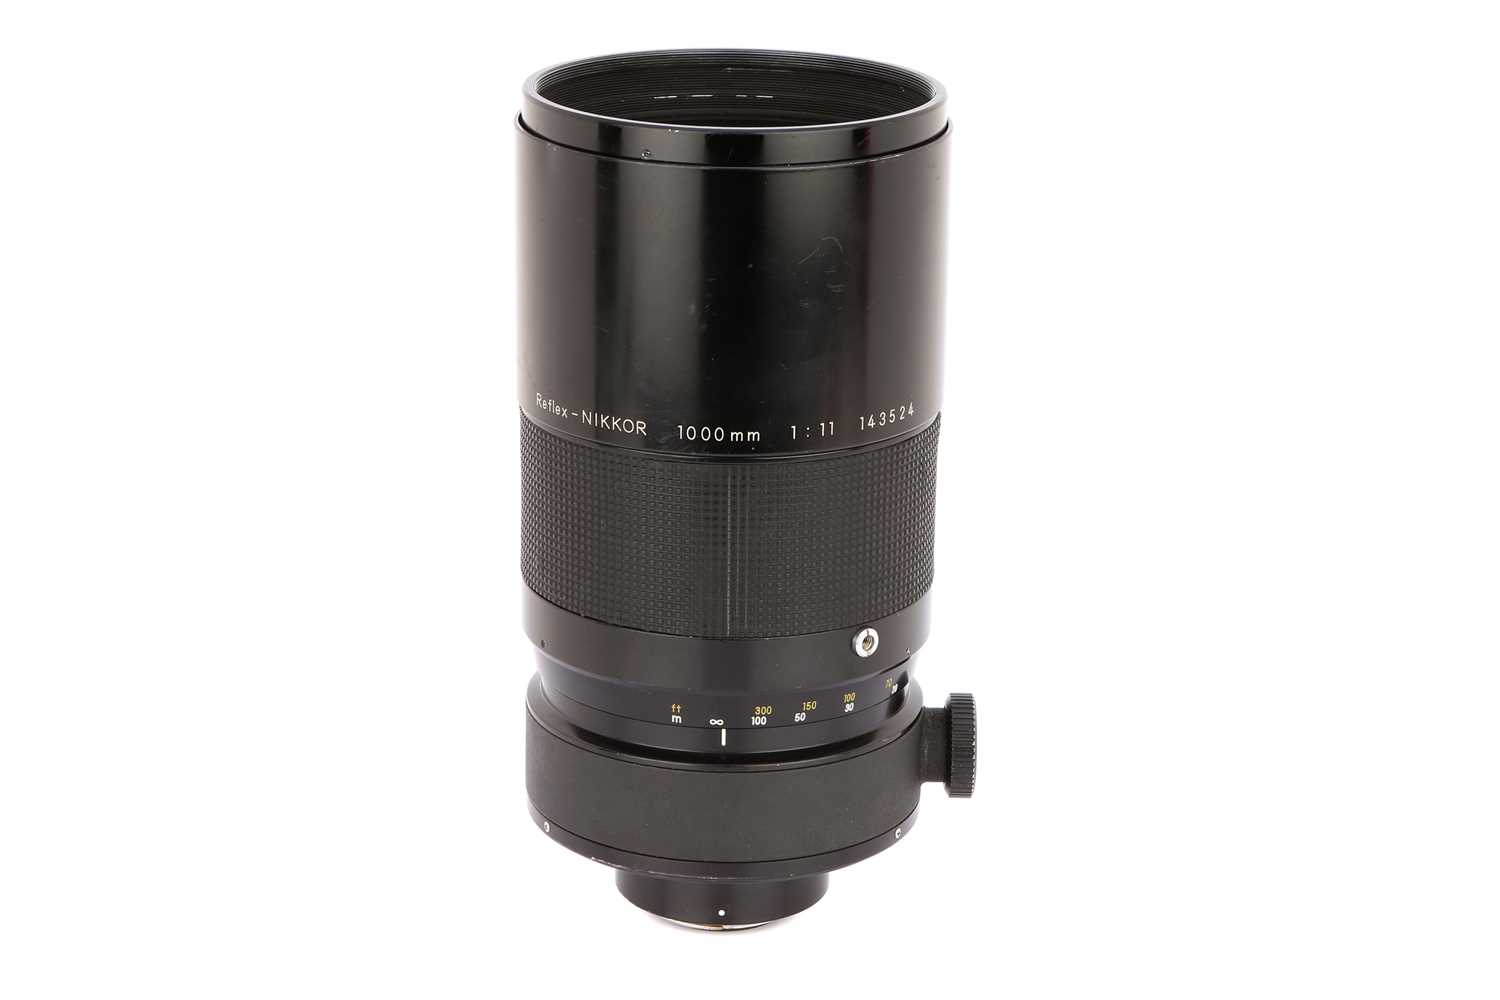 Lot 304 - A Nikon Reflex-Nikkor f/11 1000mm Lens